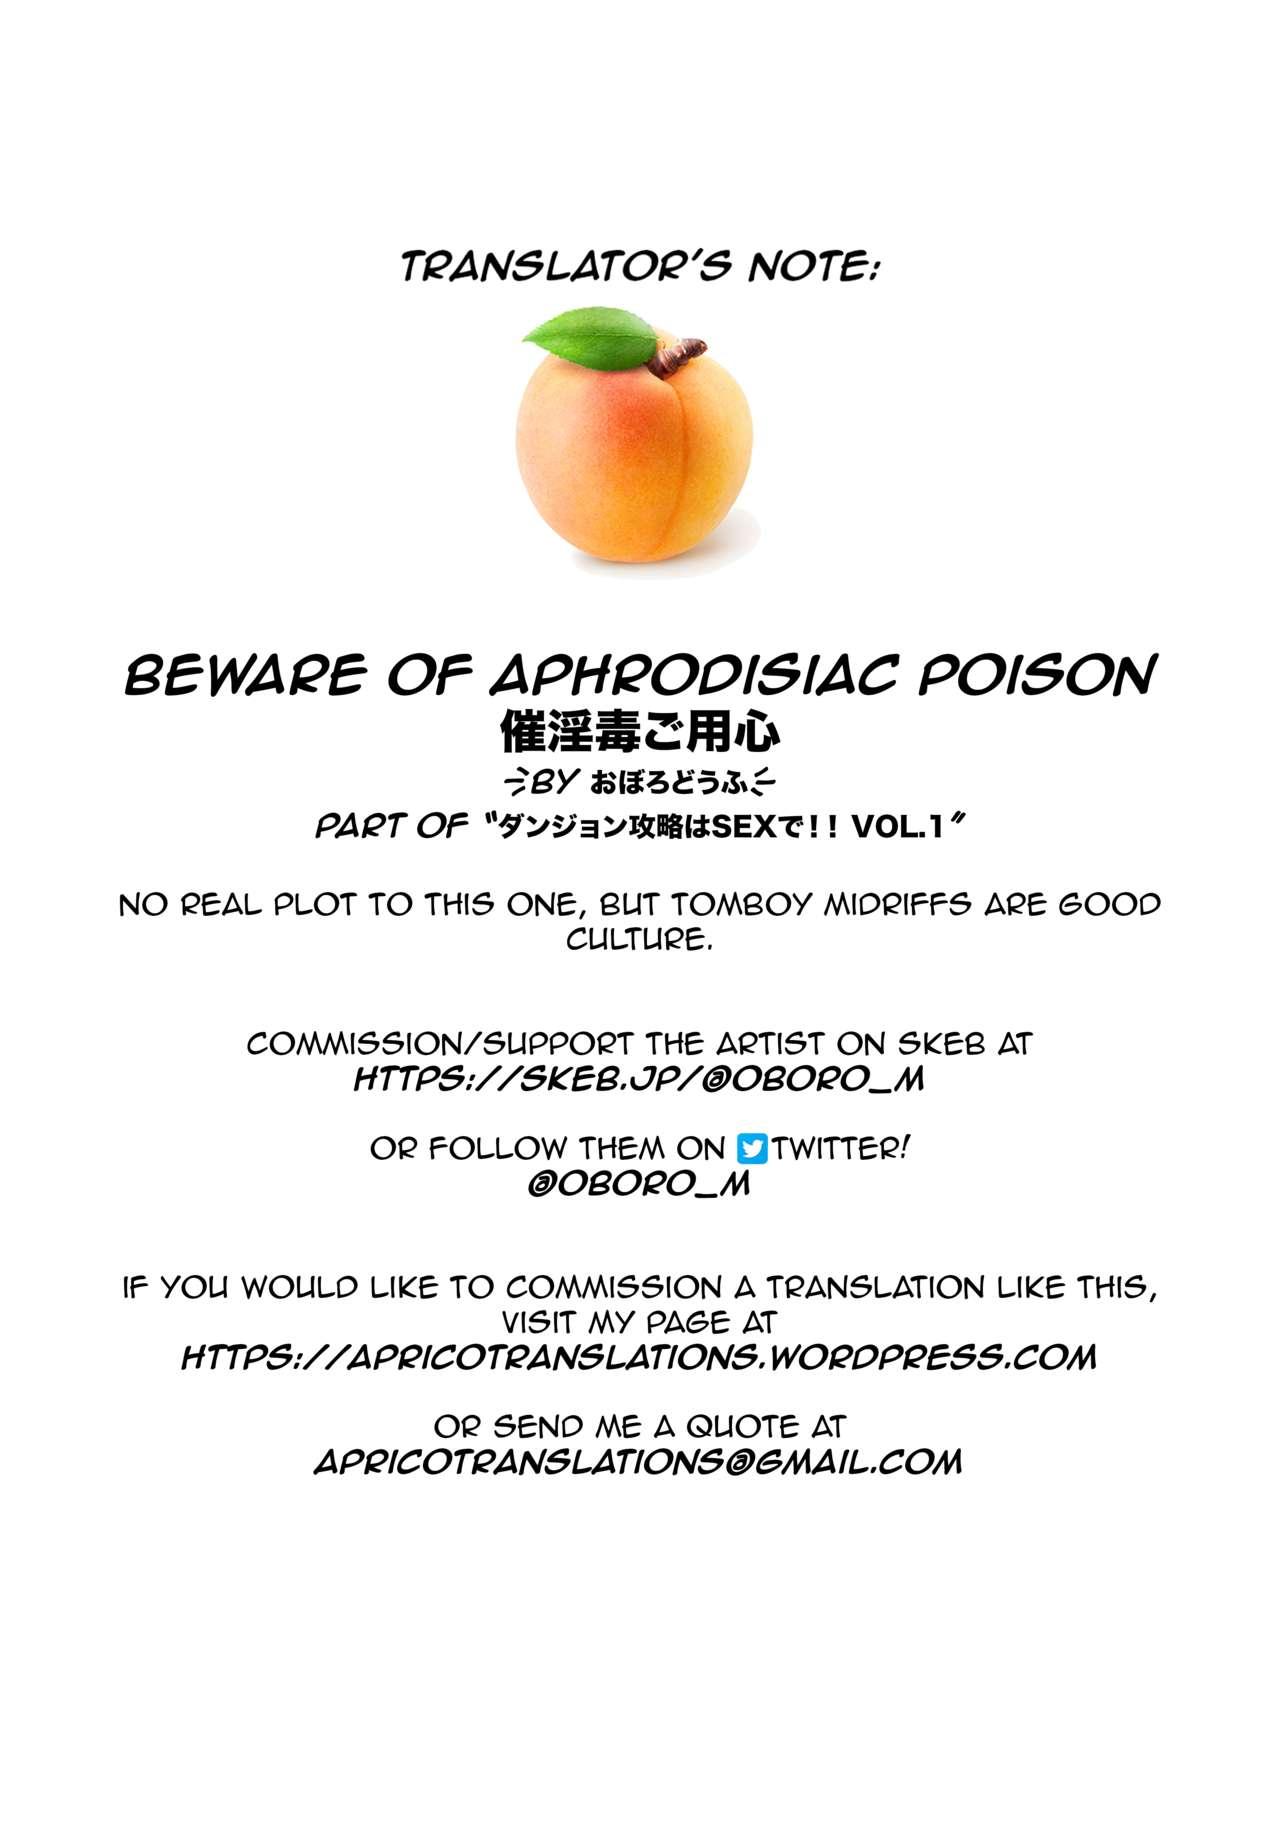 Beware of aphrodisiac poison 20